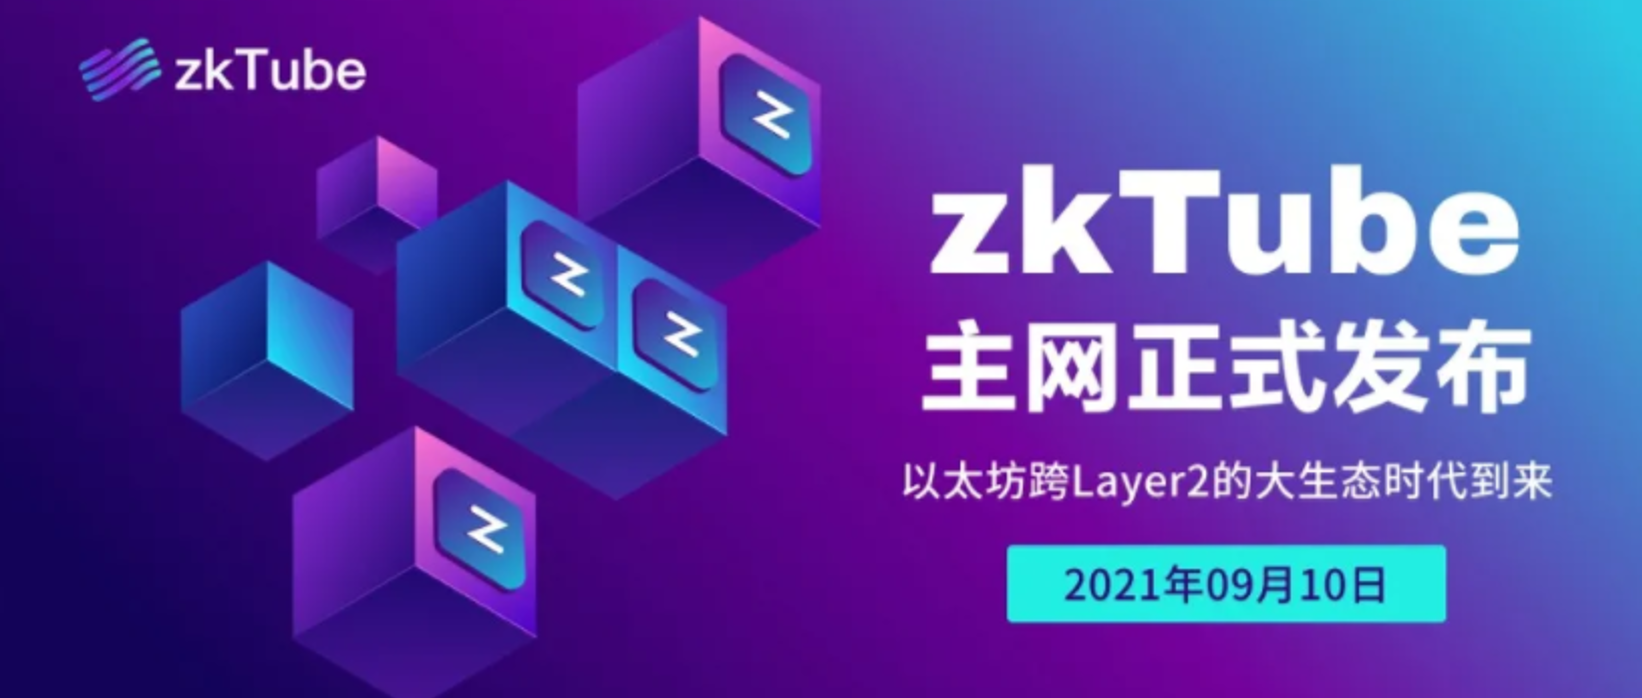 以太坊 Layer2 生态的互通桥梁：zkTube 正式发布主网络